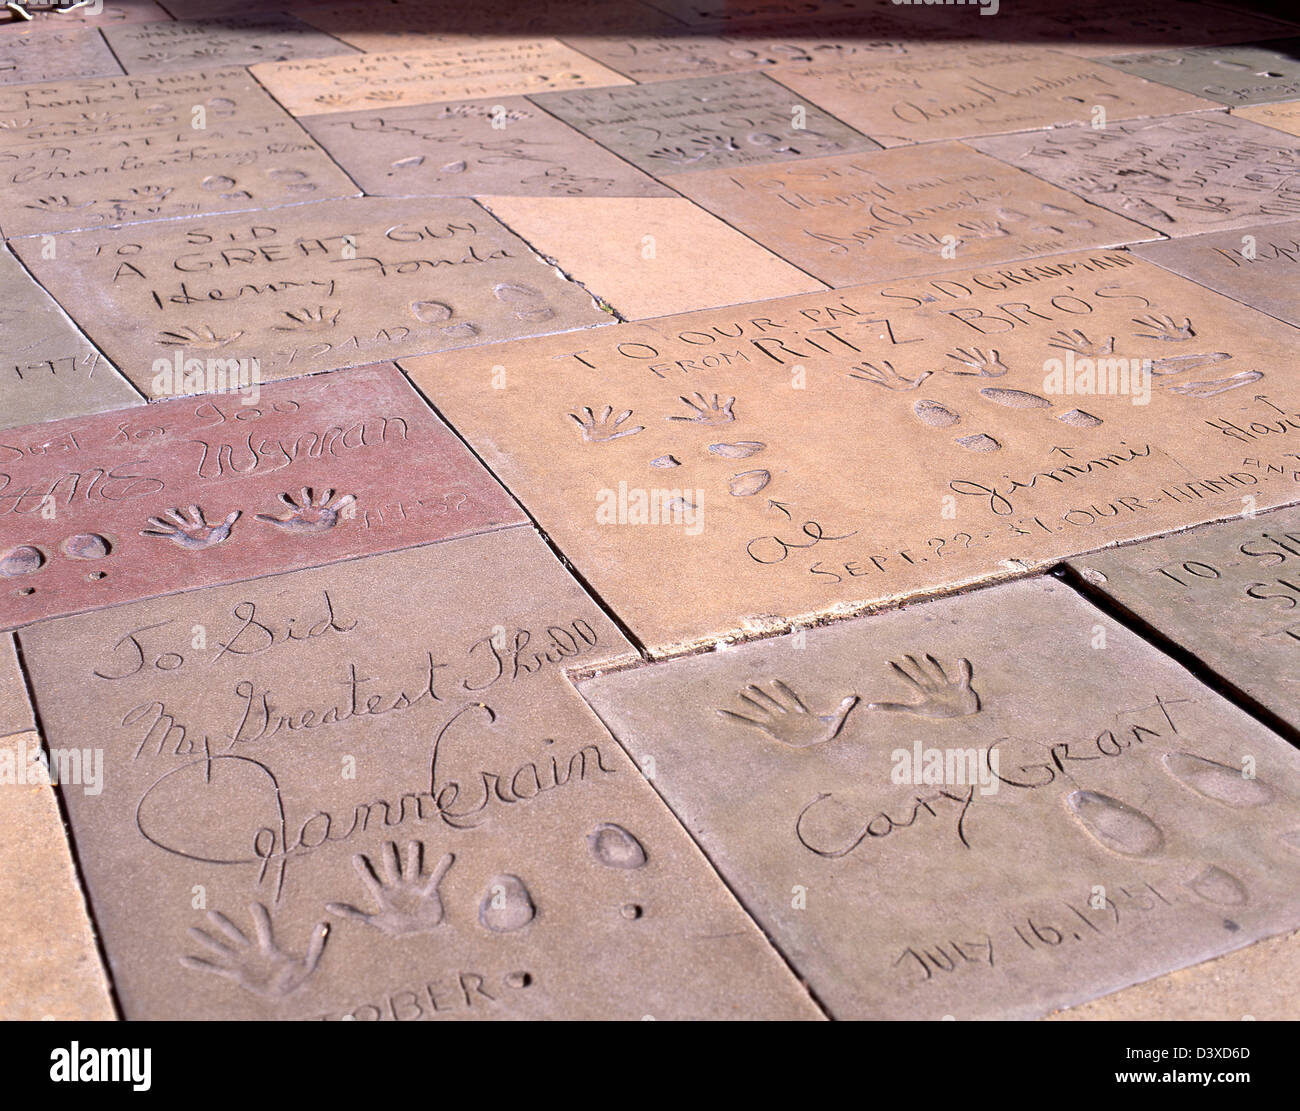 Les célébrités hollywoodiennes se font une main sur la piste du théâtre chinois de Grauman, Hollywood Boulevard, Los Angeles, Californie, États-Unis d'Amérique Banque D'Images